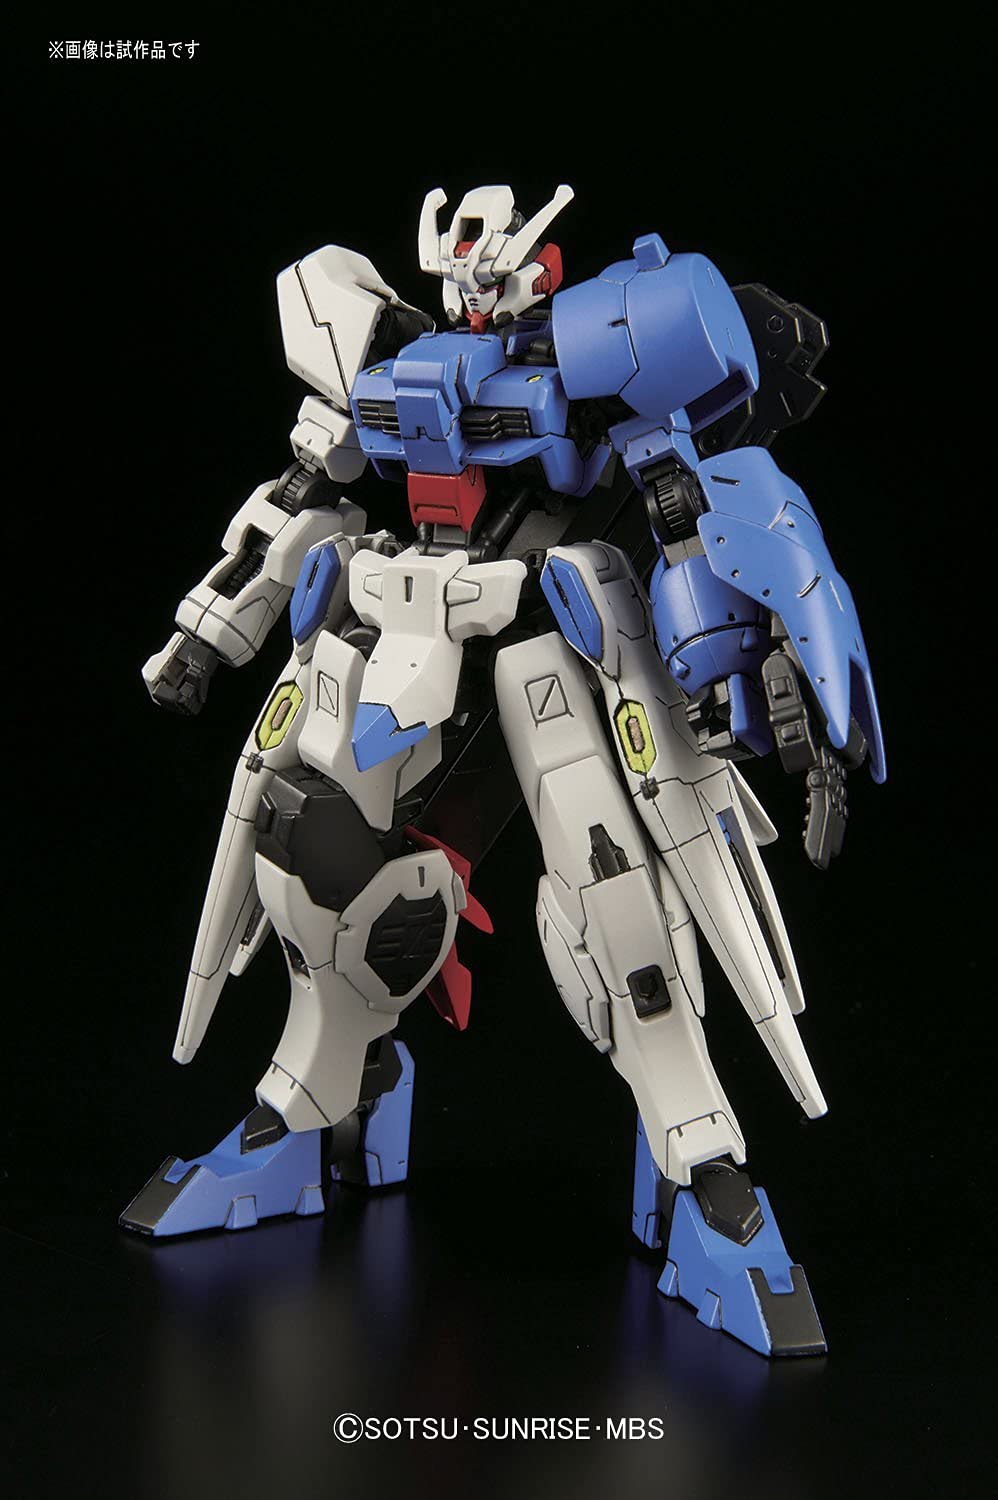 Bandai Hobby Gundam Iron-Blooded Orphans IBO Astaroth HG 1/144 Model Kit USA 